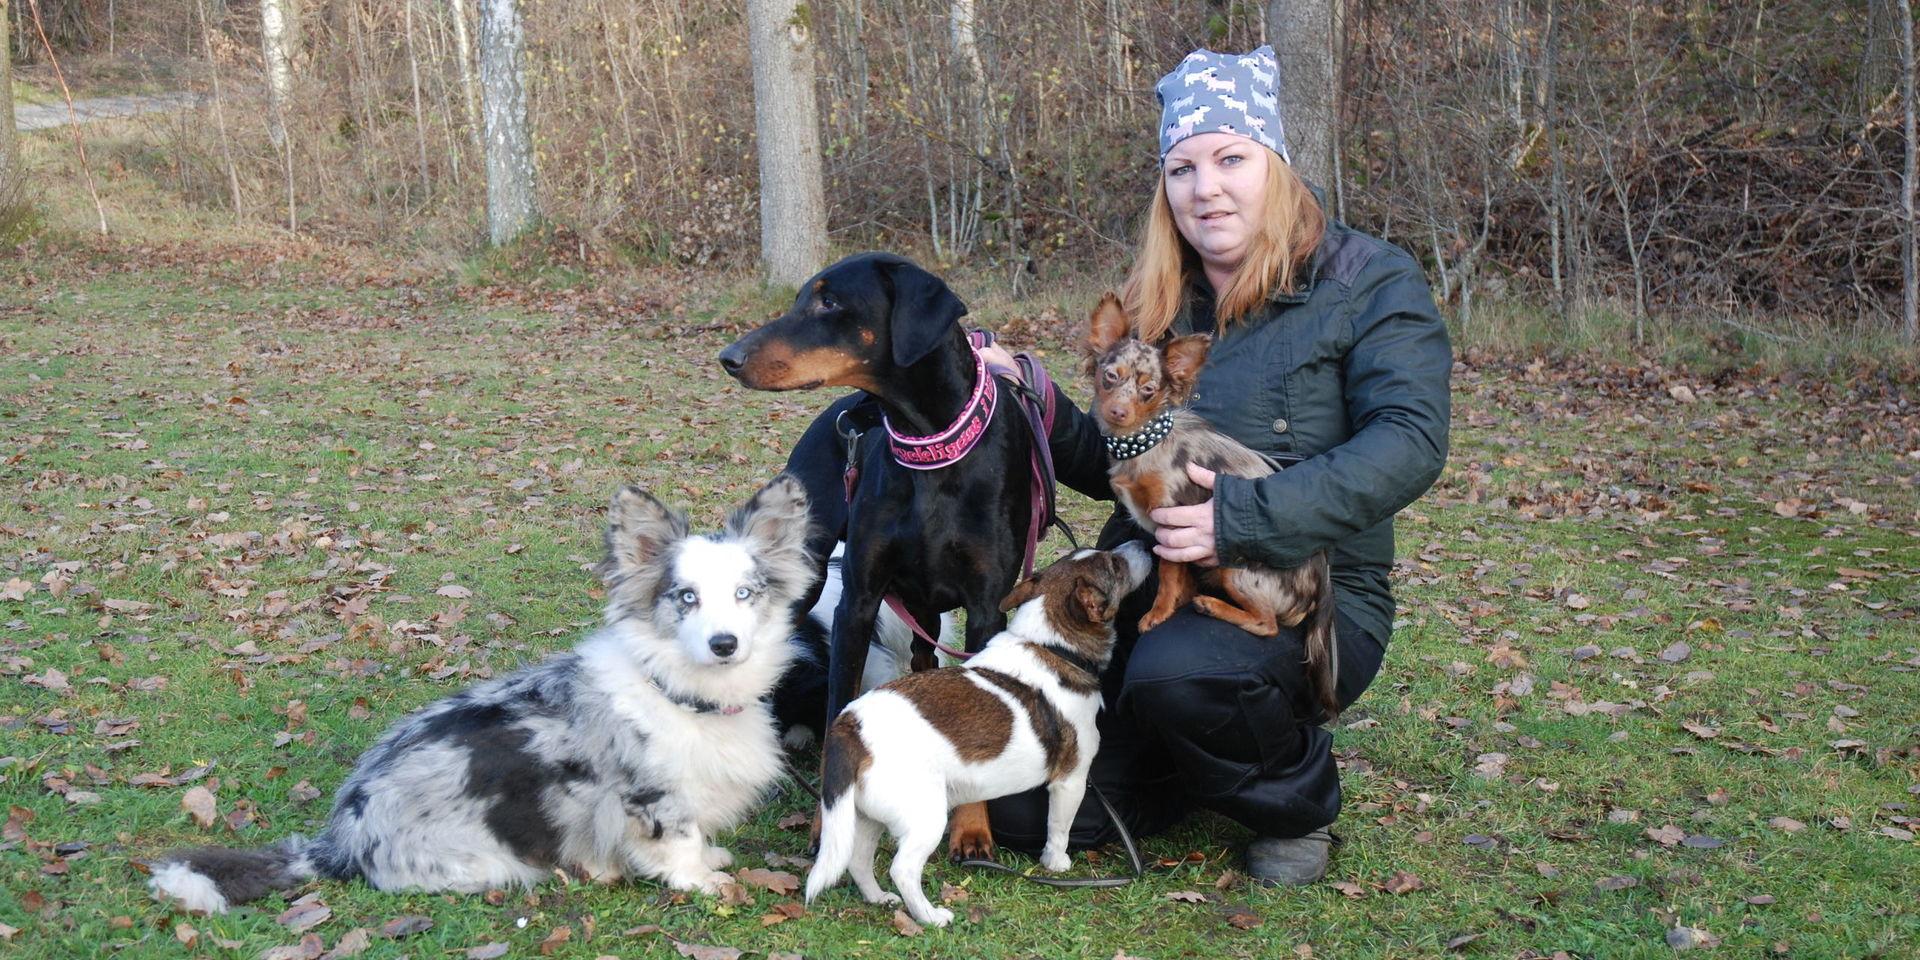 När kroppen satte stopp tvingades Carolina Öhrn lämna sitt industrijobb. Hundarna blev hennes lycka och i dag driver hon eget företag som hundrastare. &quot;Om jag inte haft hundarna hade jag nog mått mycket sämre&quot;, säger hon.